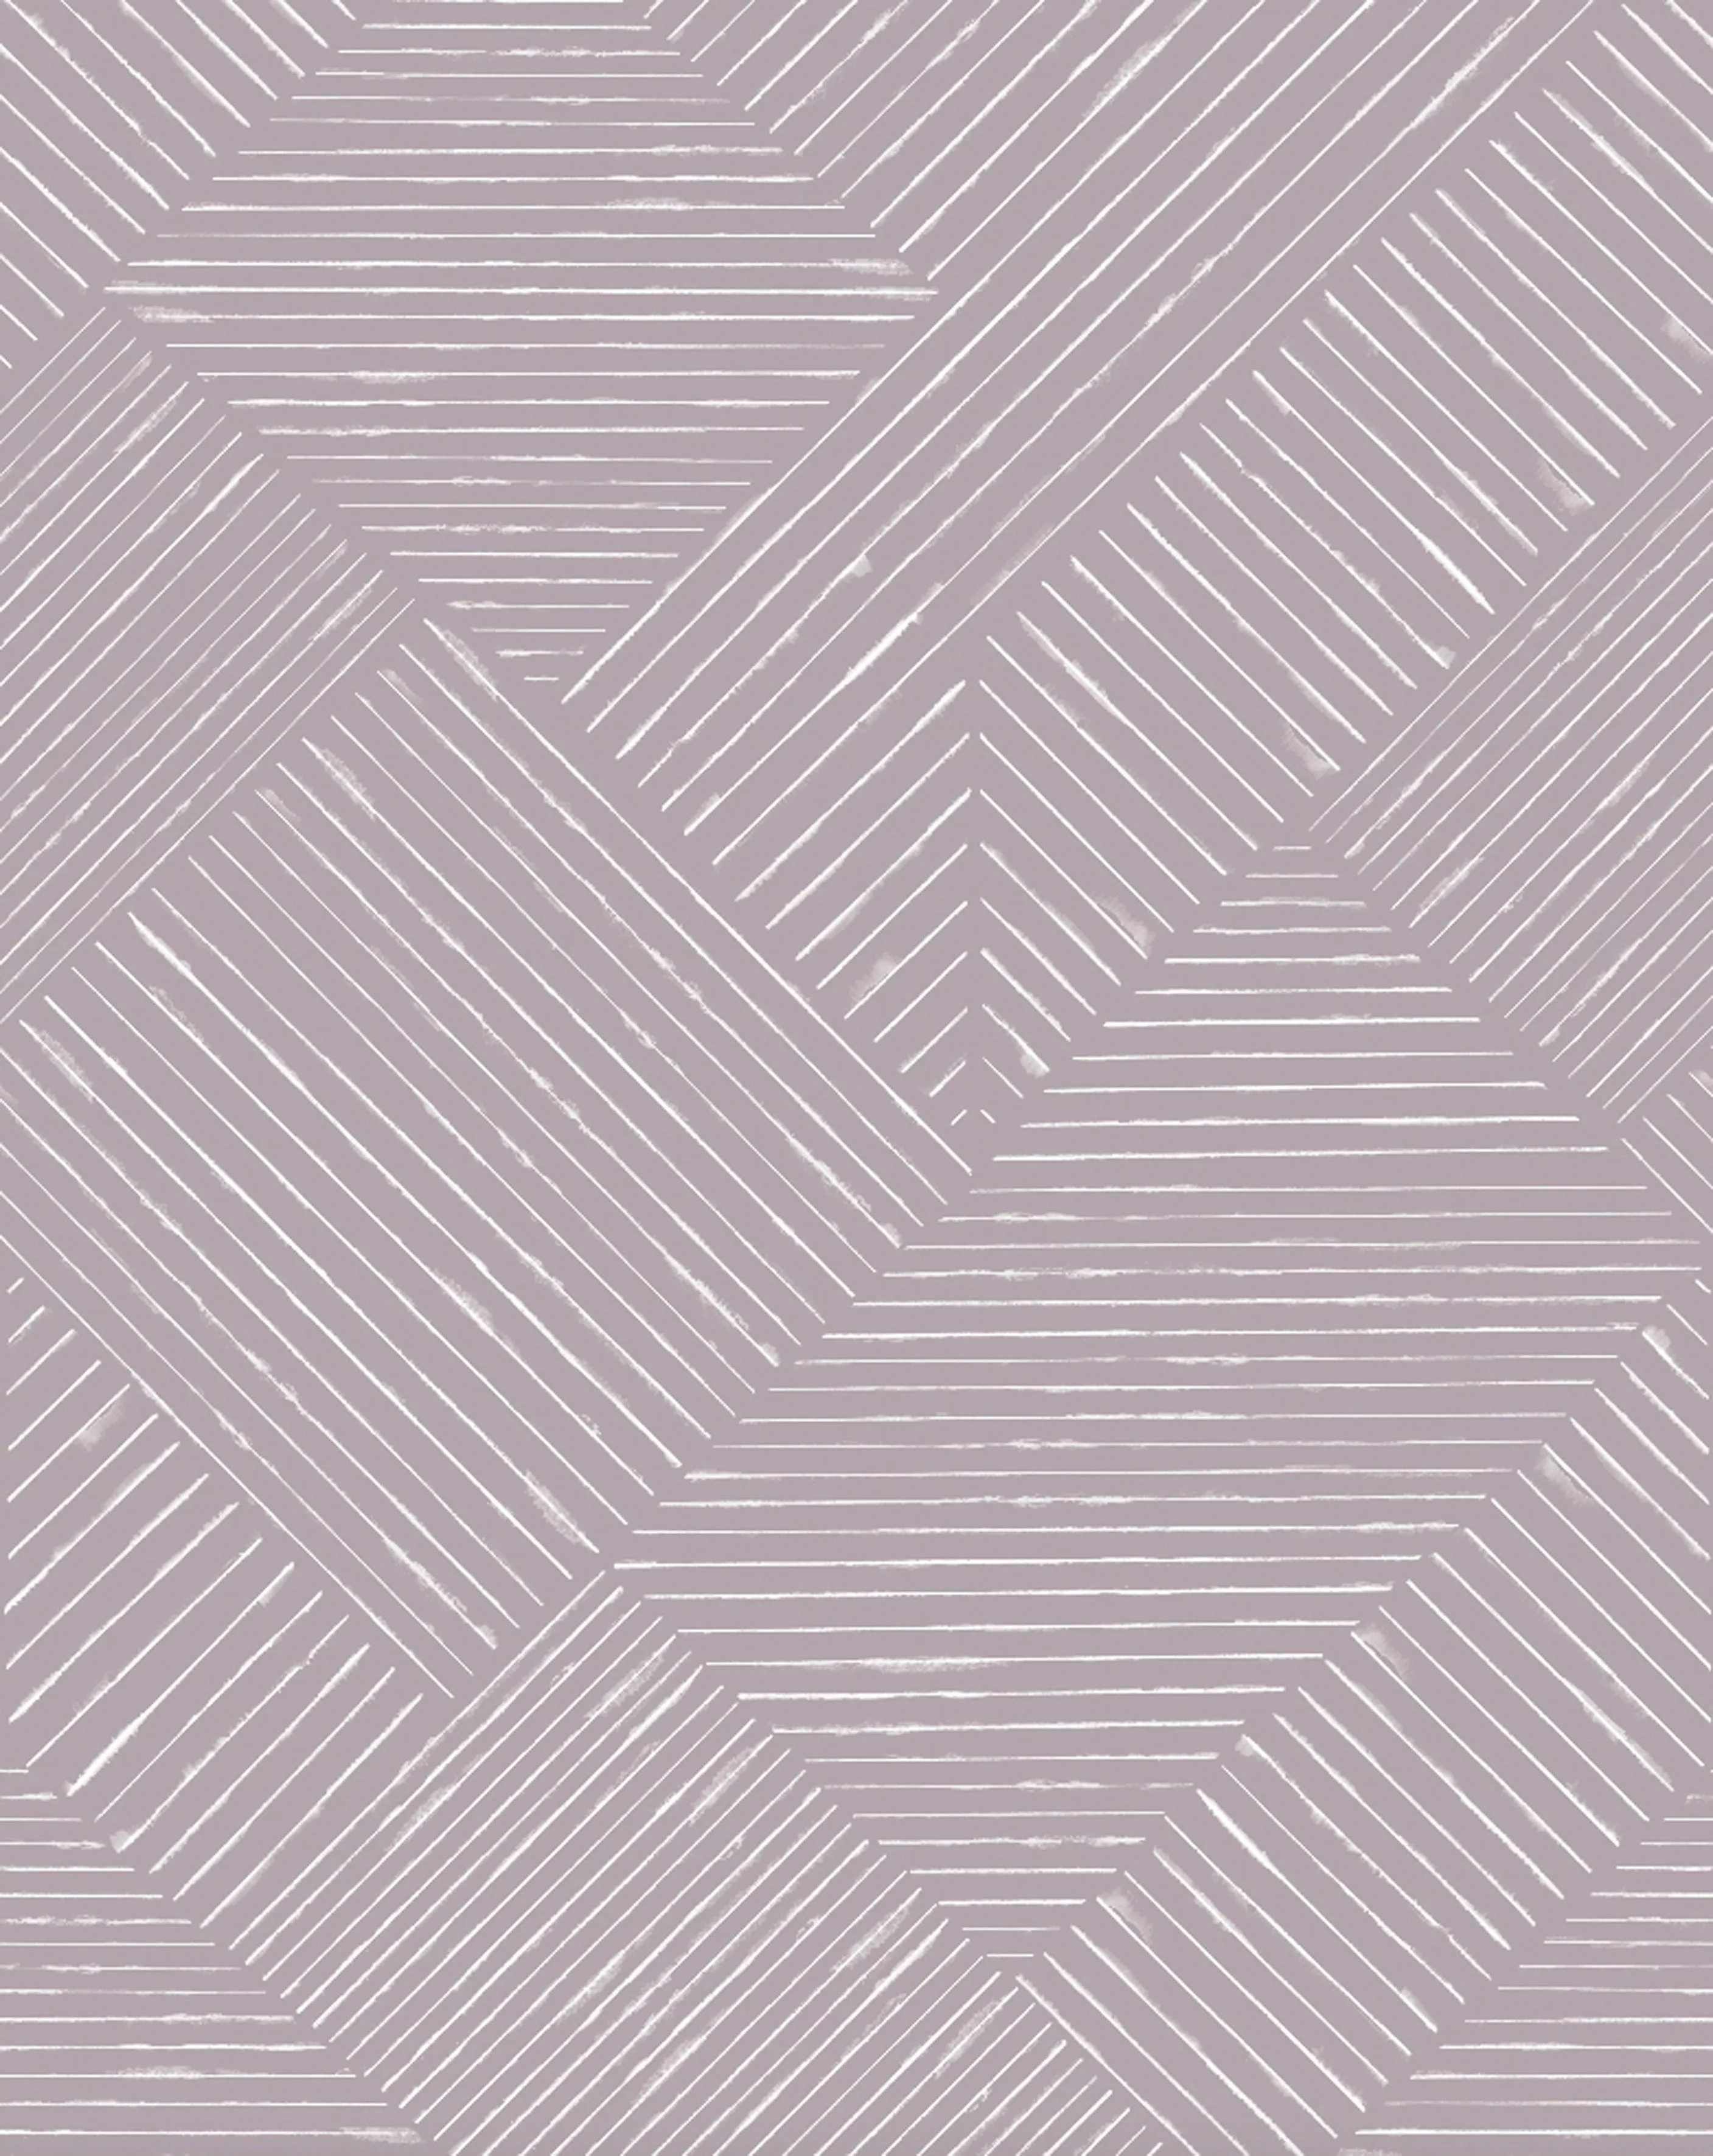 Schöner Wohnen Vliestapete New Delight Streifen Violett-Weiß 340 x 265 cm F günstig online kaufen